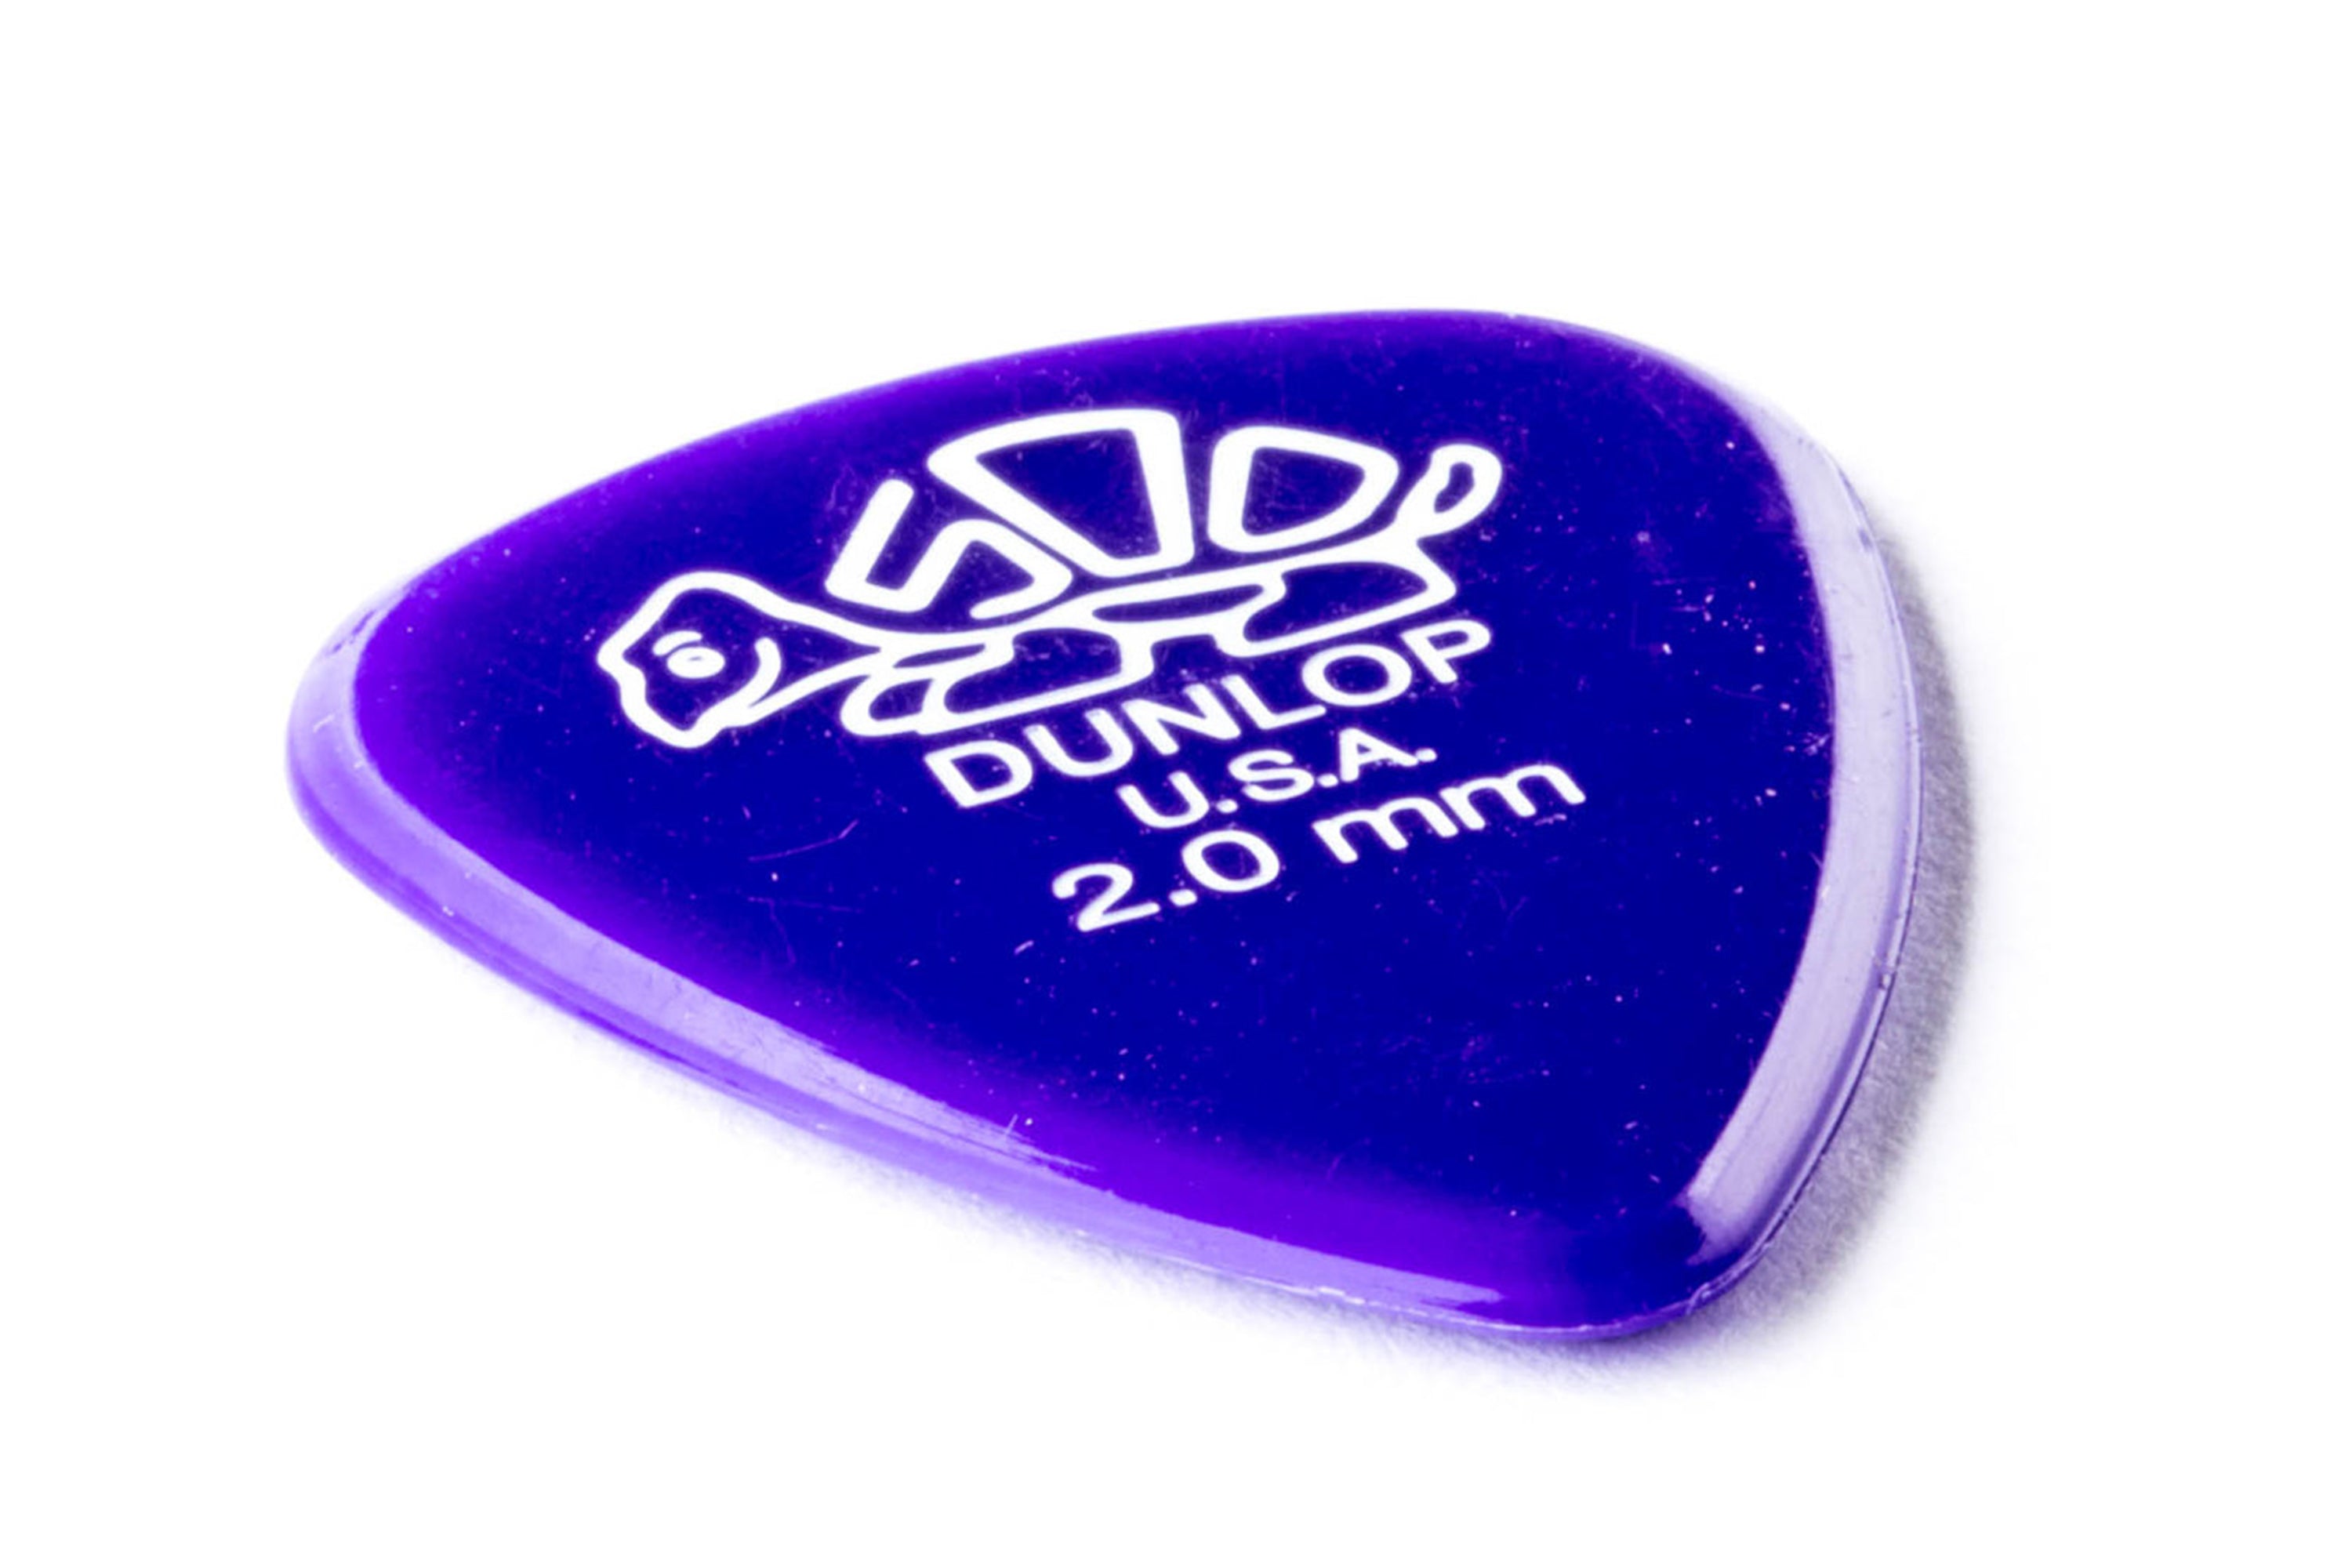 Dunlop Delrin 500 Standard 2.0mm Purple Guitar & Ukulele Picks 12 Pack